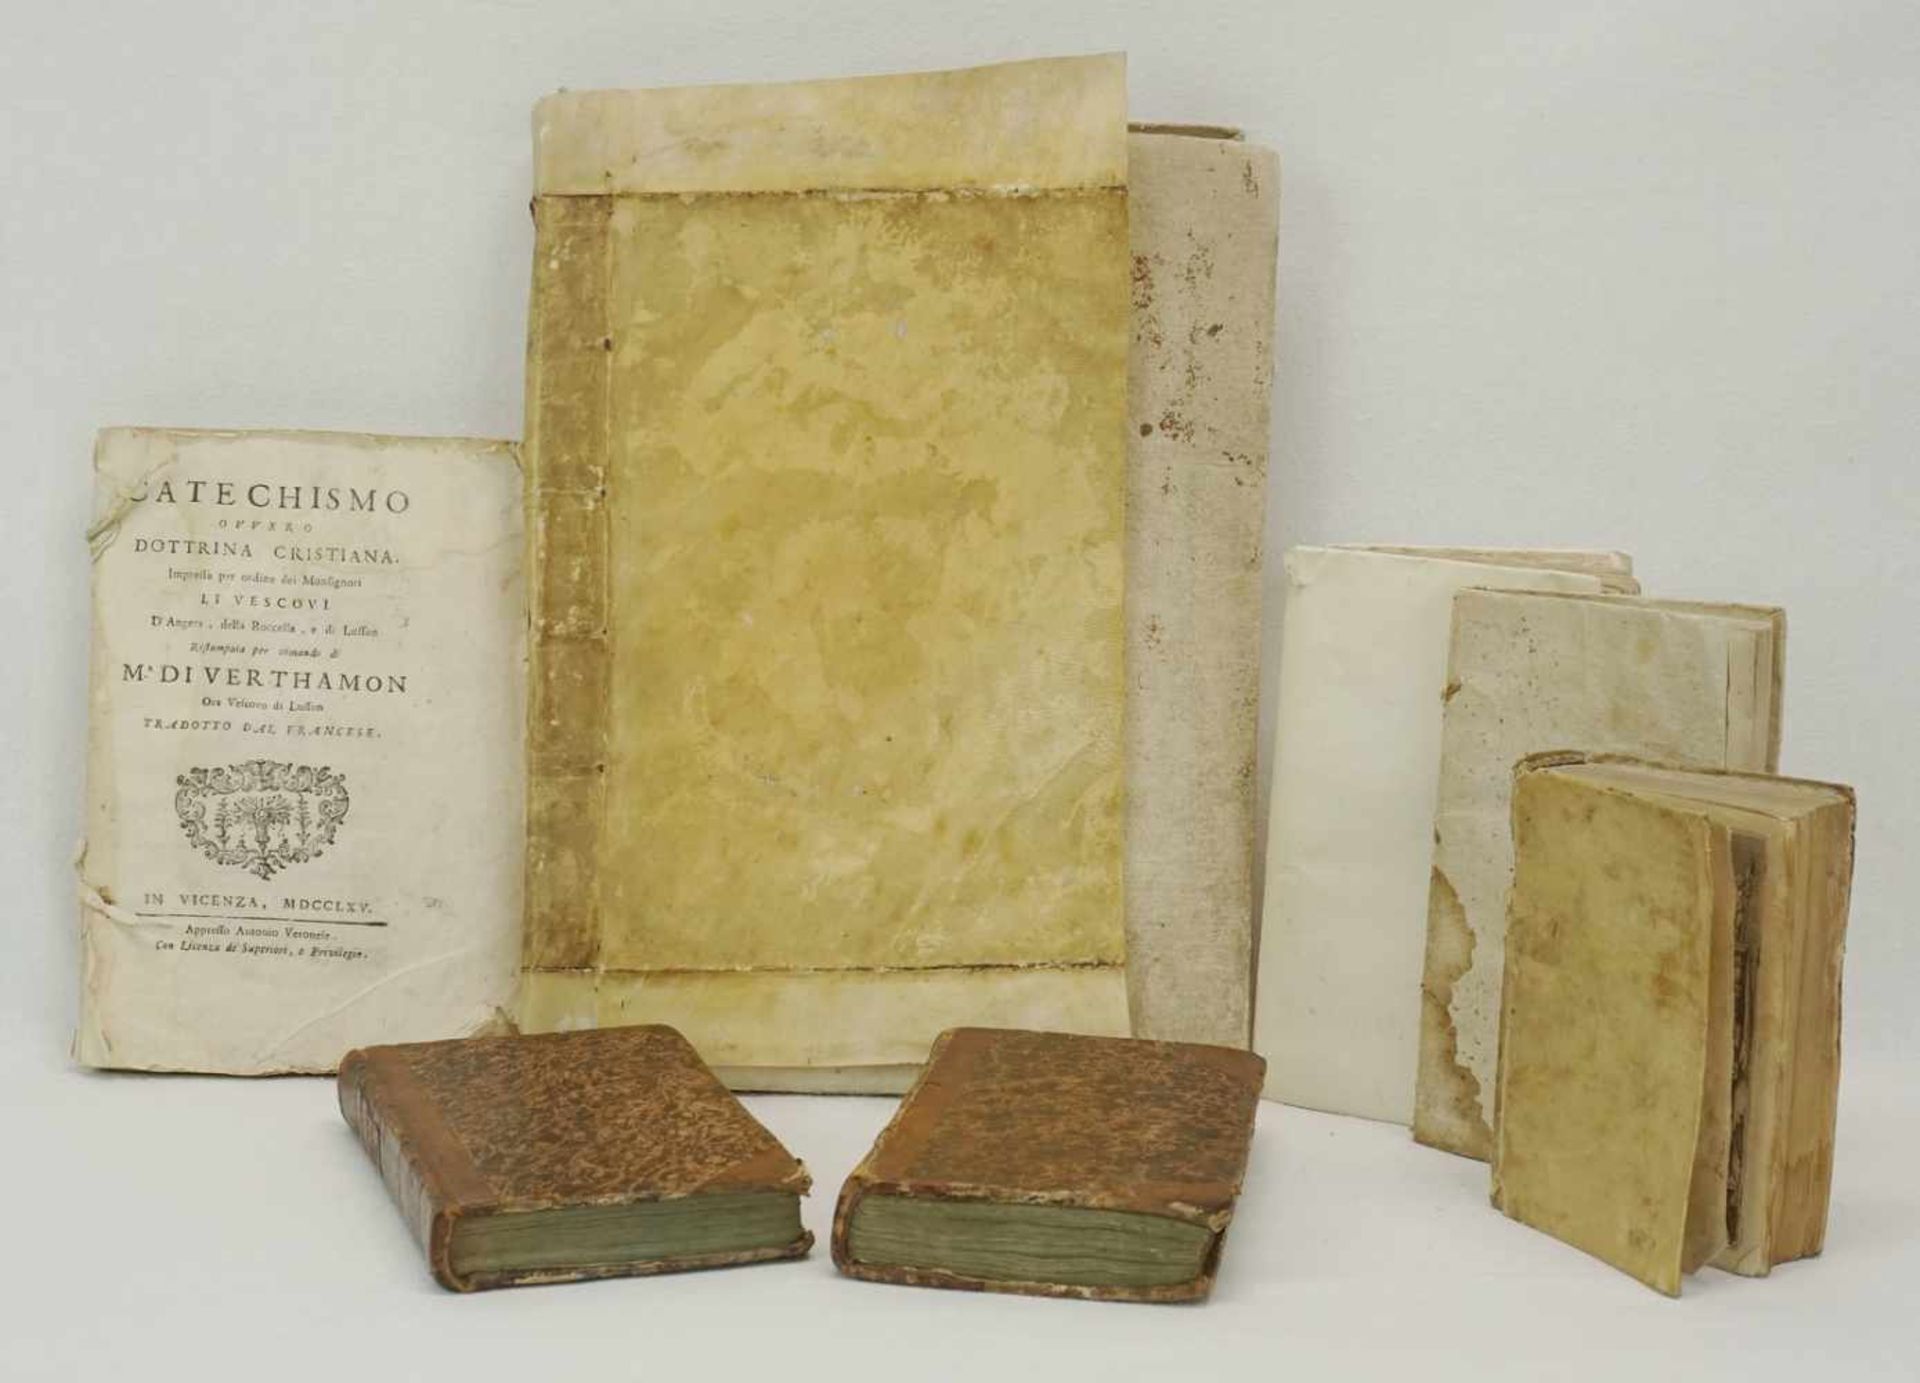 Sechs Bücher von 1633 bis 18141) "Catechismo Ovvero Dottrina Cristiana", 1765, Einband fehlt, 260